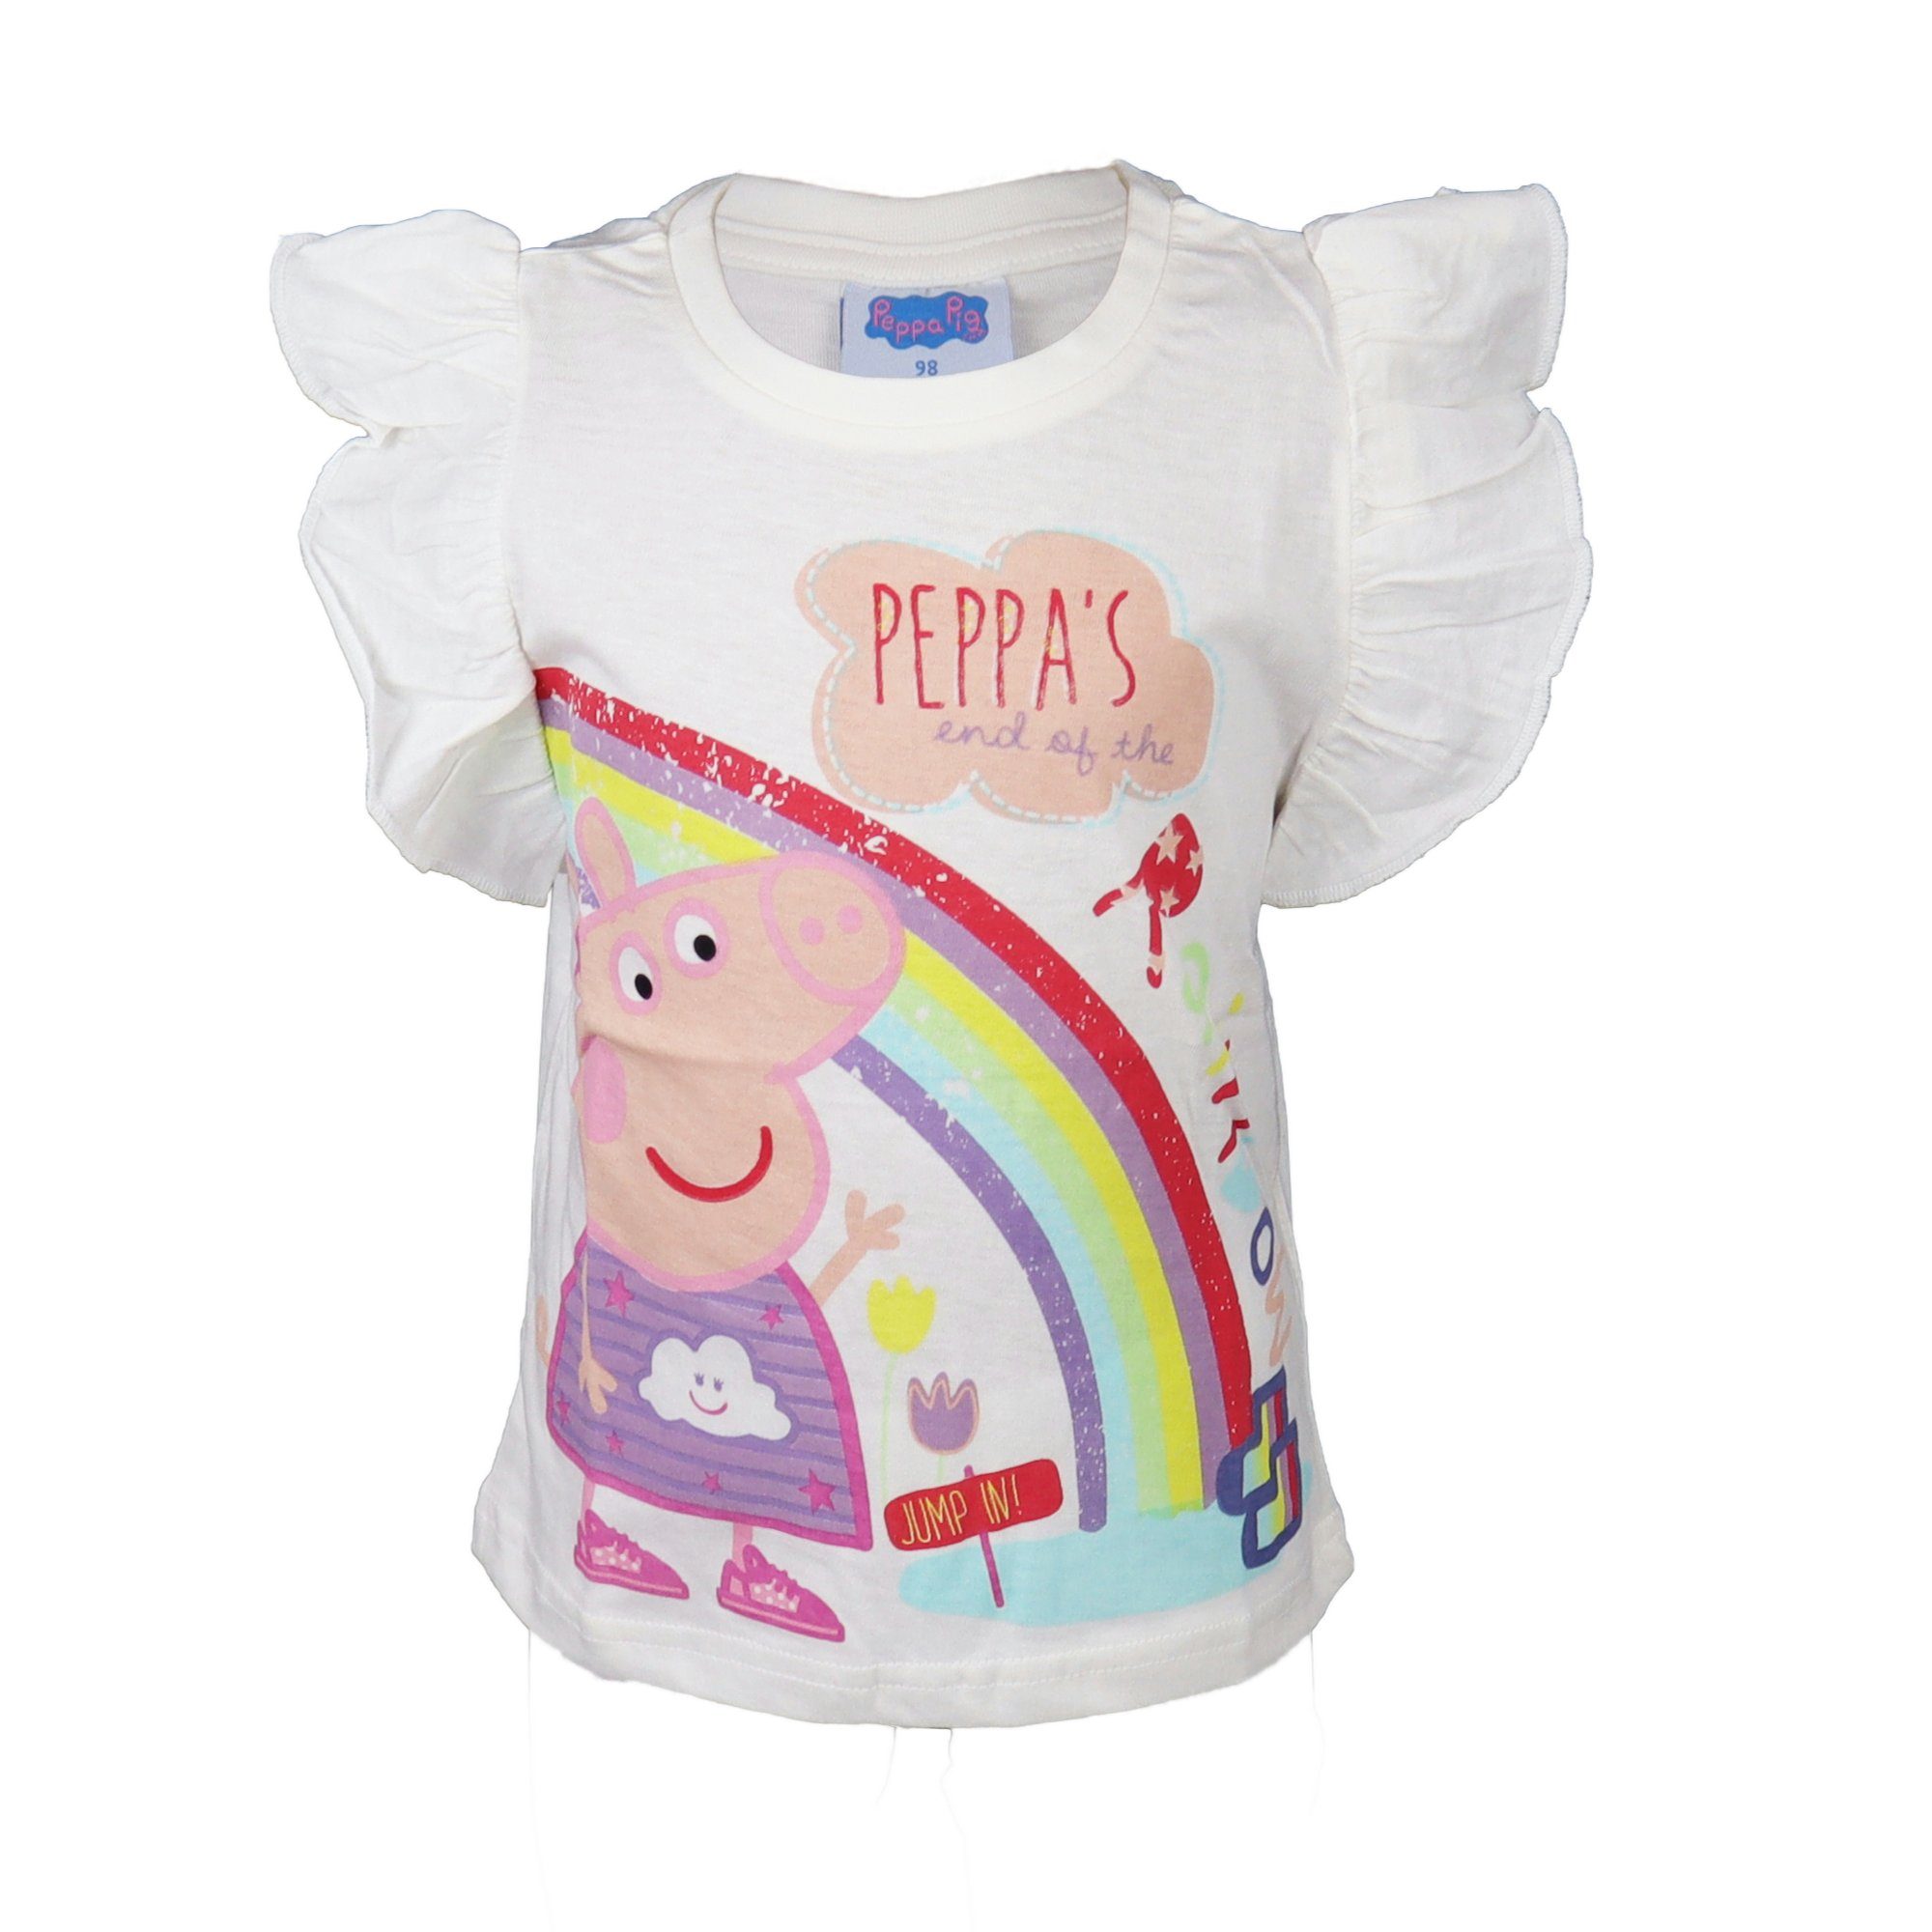 Peppa Pig bis Gr. 116, Weiß Kinder T-Shirt Baumwolle Wutz 100% Shirt 92